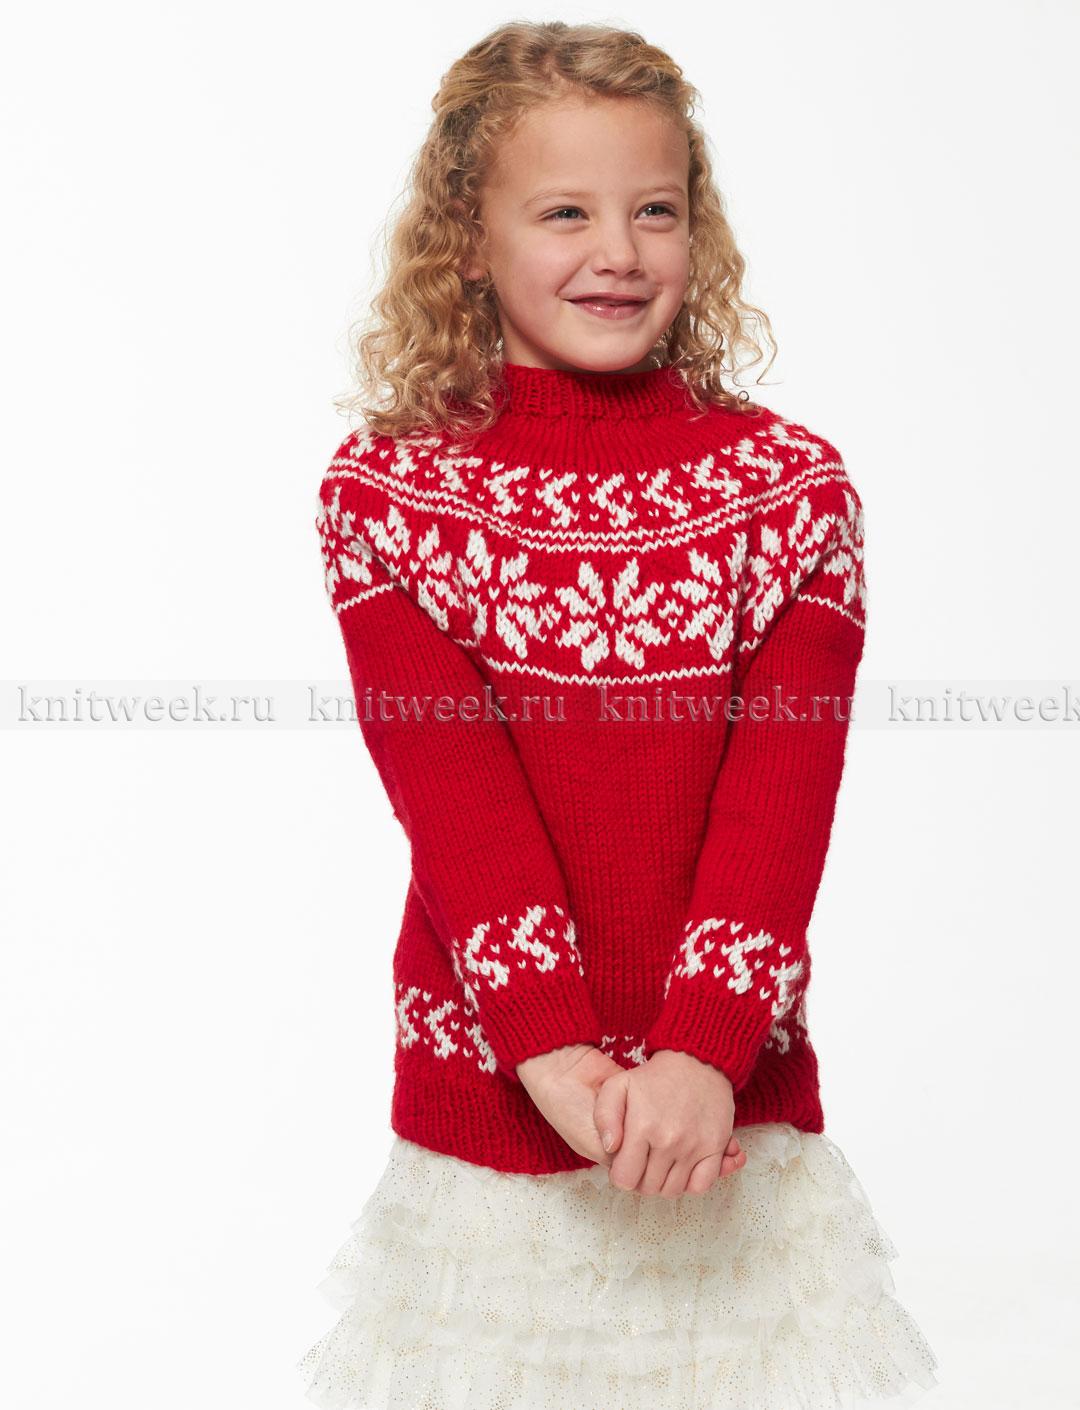 Материалы для вязания спицами пуловера с круглой кокеткой для девочек: